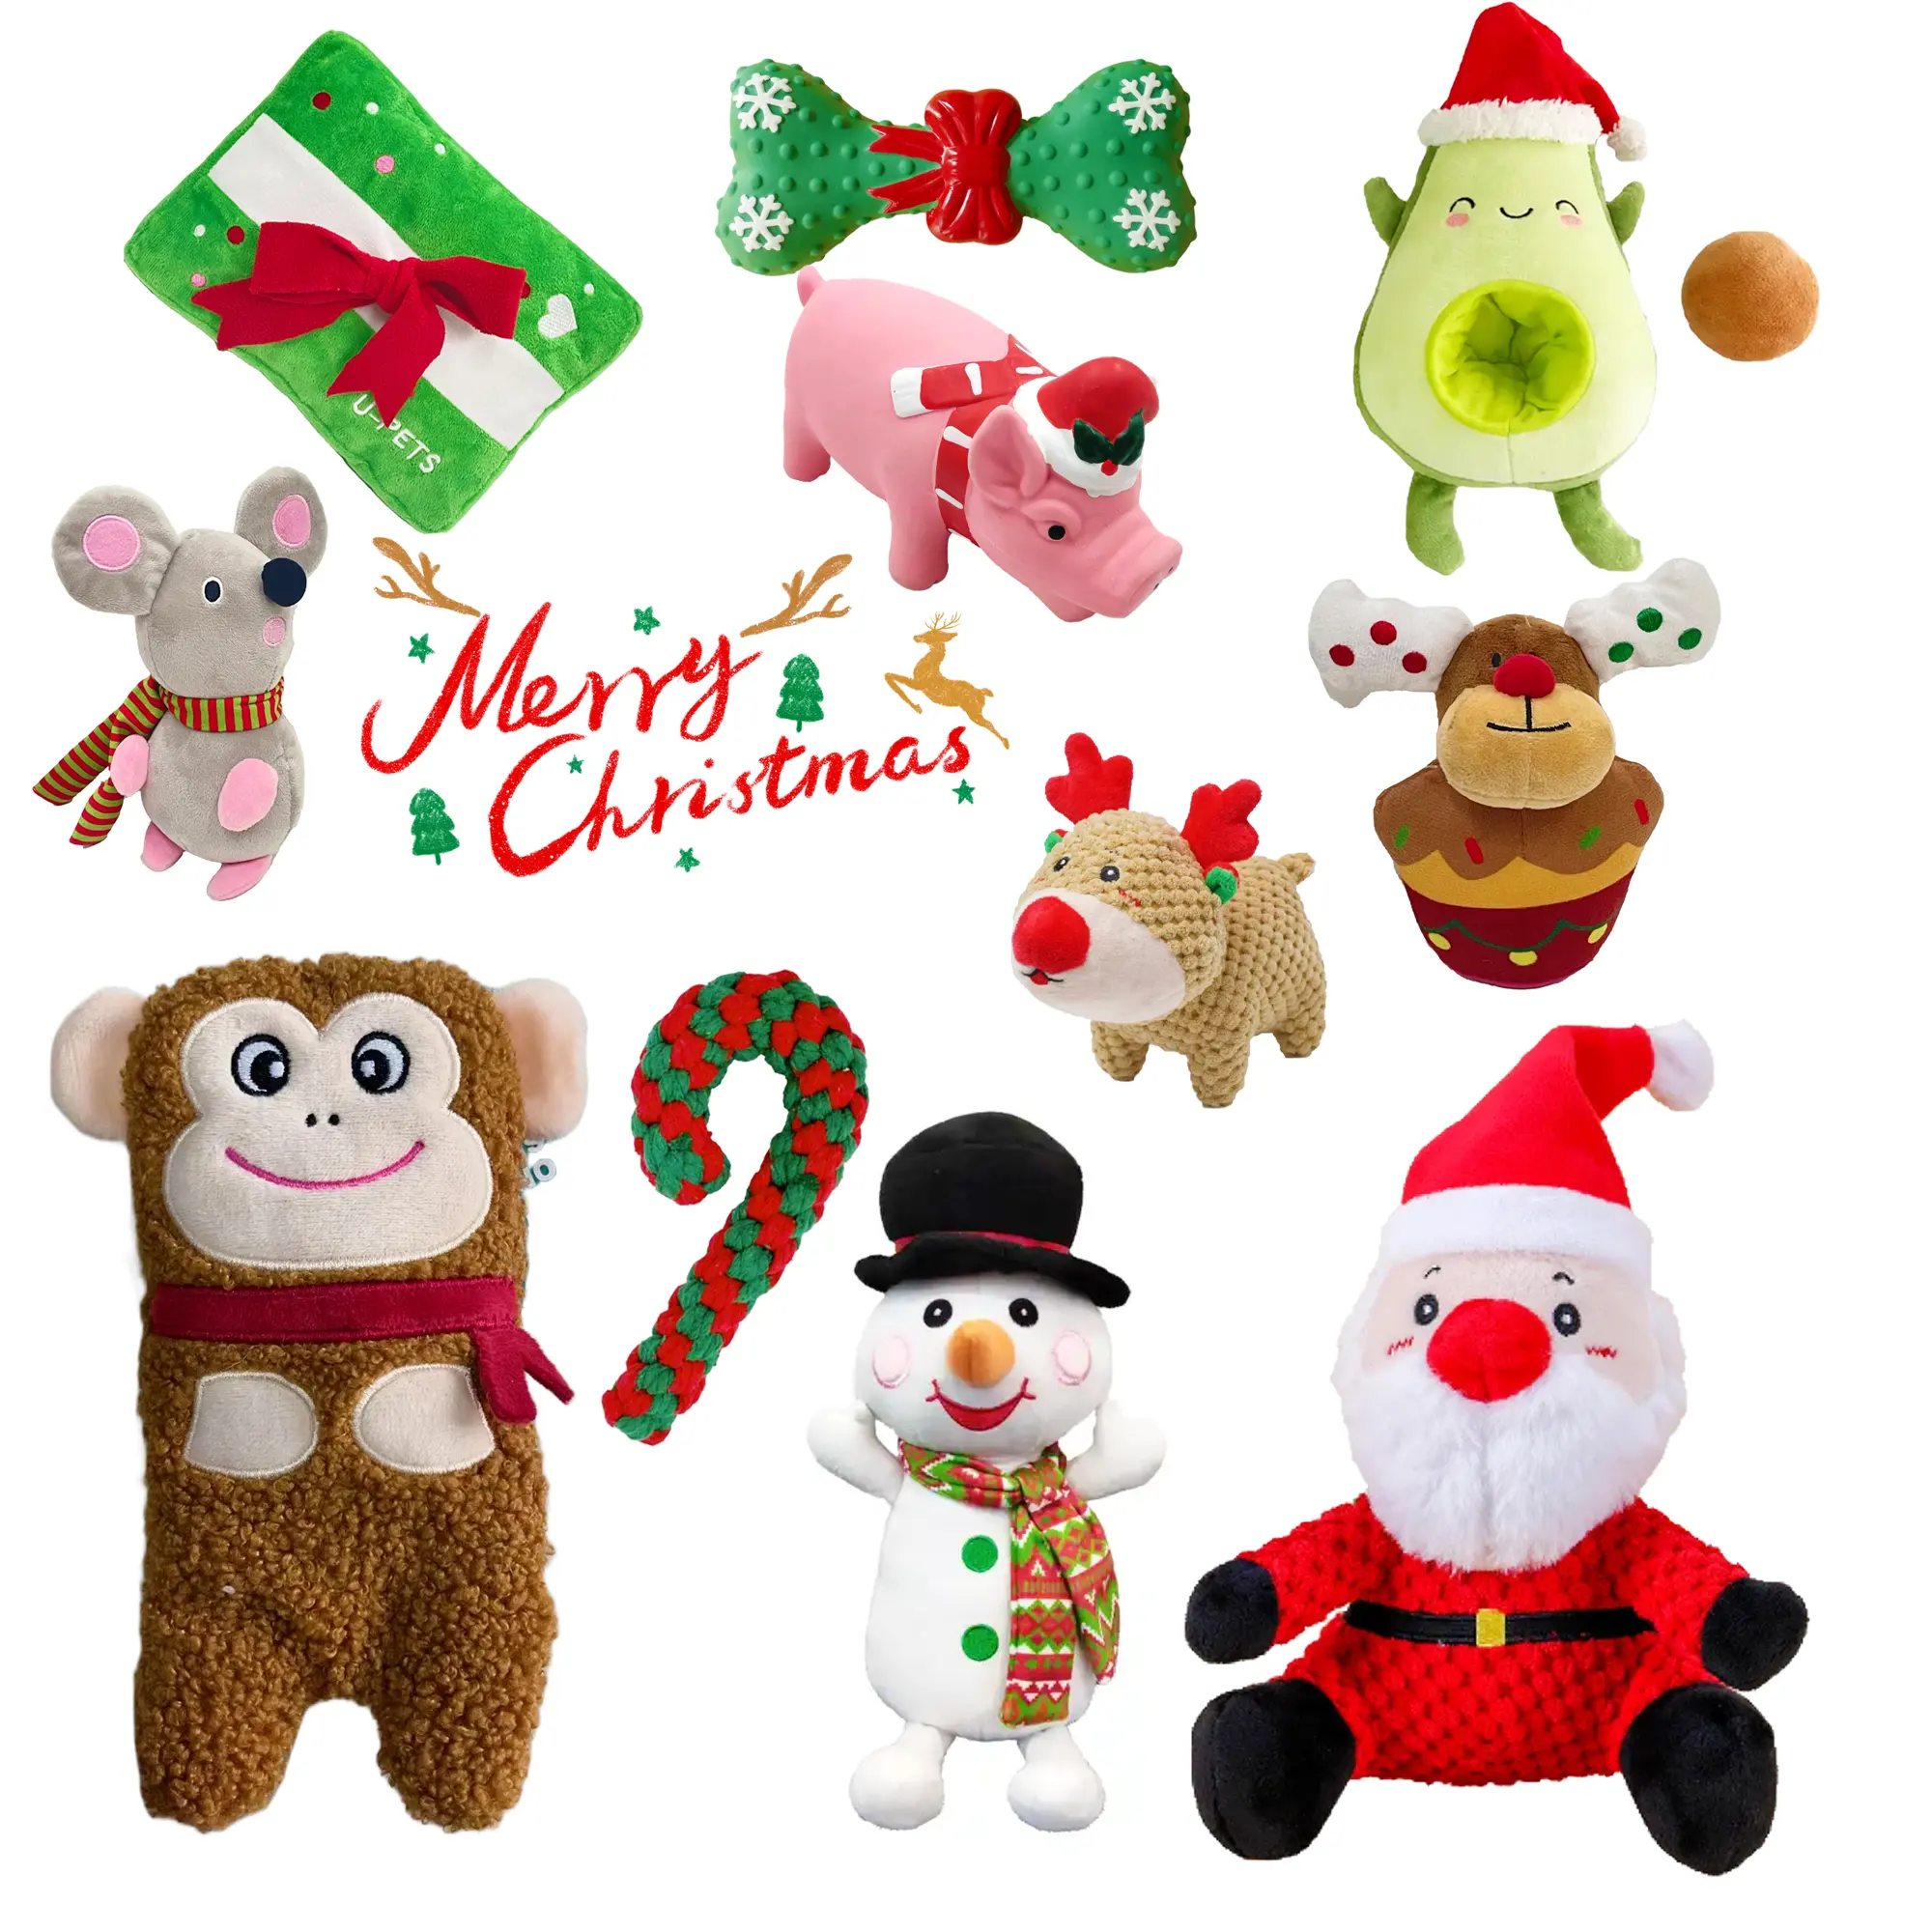 대화 형 삐걱 거리는 크리스마스 개 장난감 모피 친구를위한 지속 가능한 재미를위한 원 스톱 쇼핑